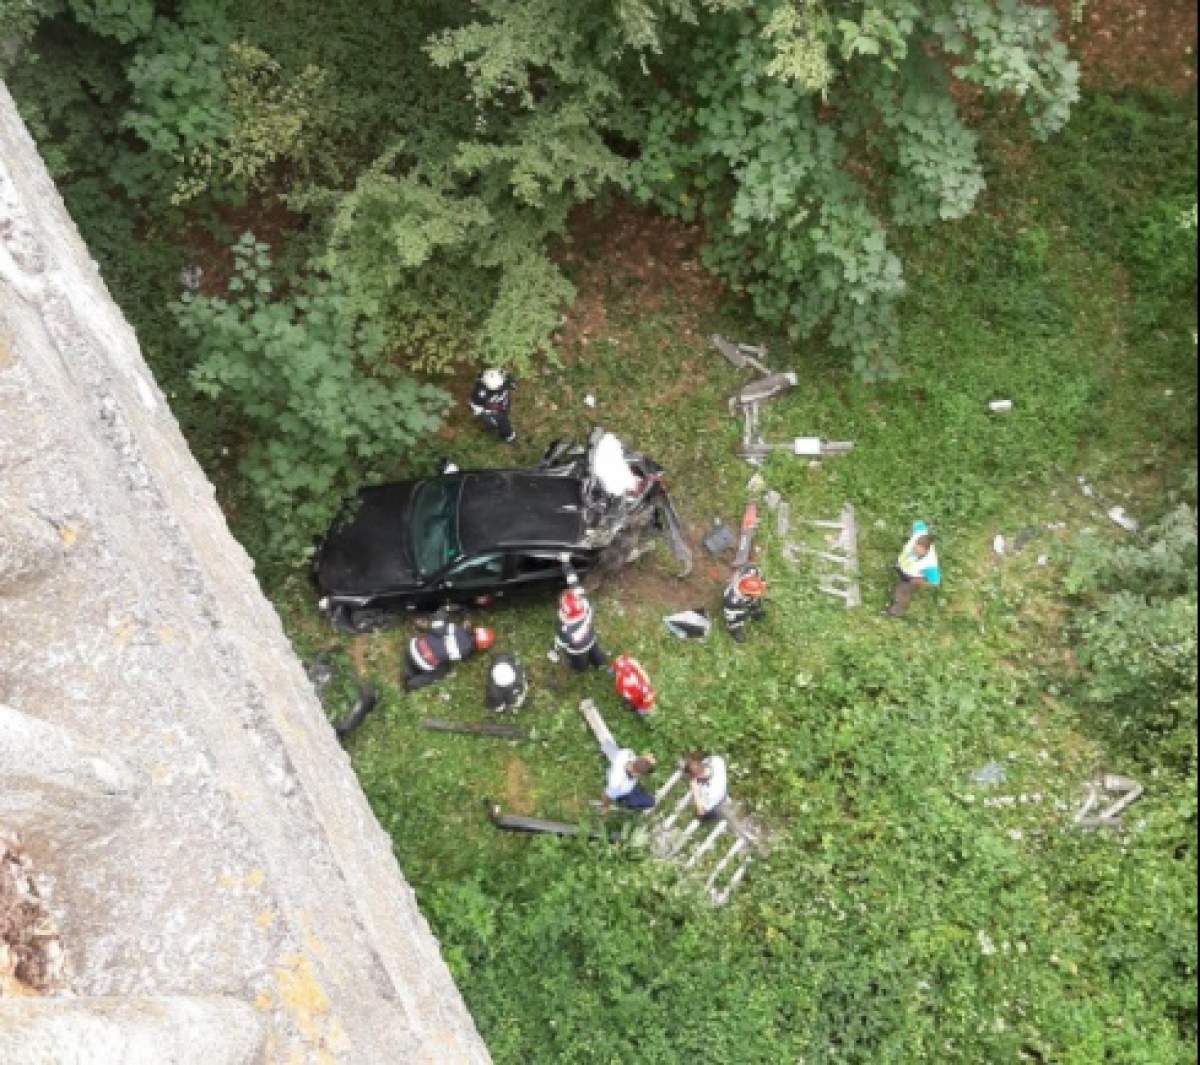 Un adolescent din Vâlcea a căzut cu maşina în râpă, de la 20 de metri. Băiatul a rămas încarcerat / FOTO